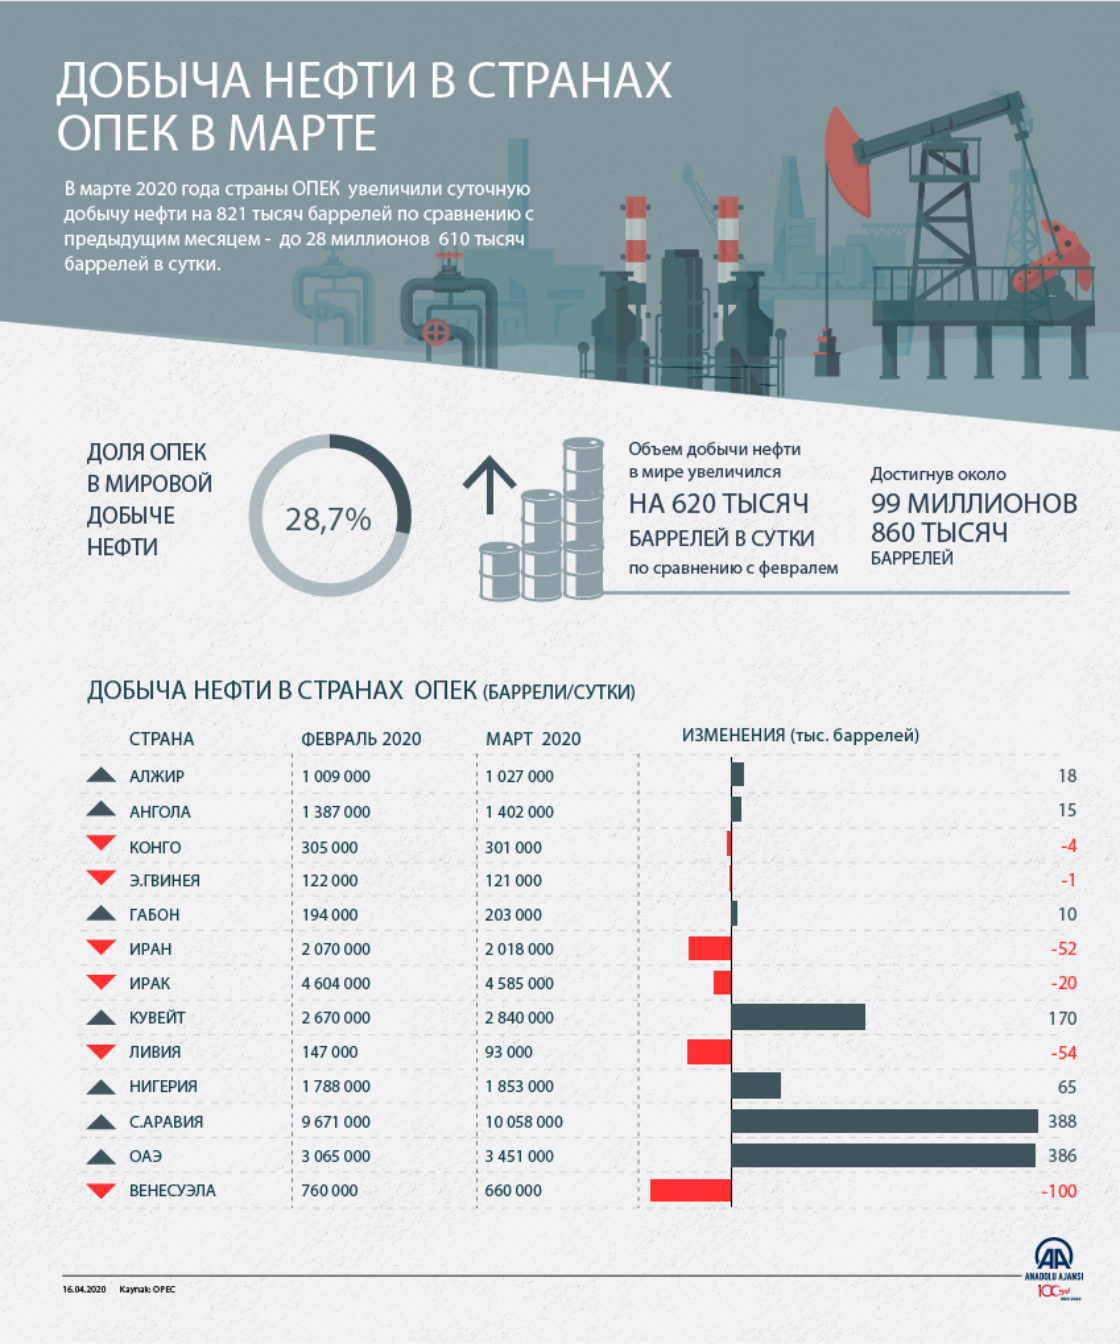 Добыча нефти в странах опек в марте увеличилась